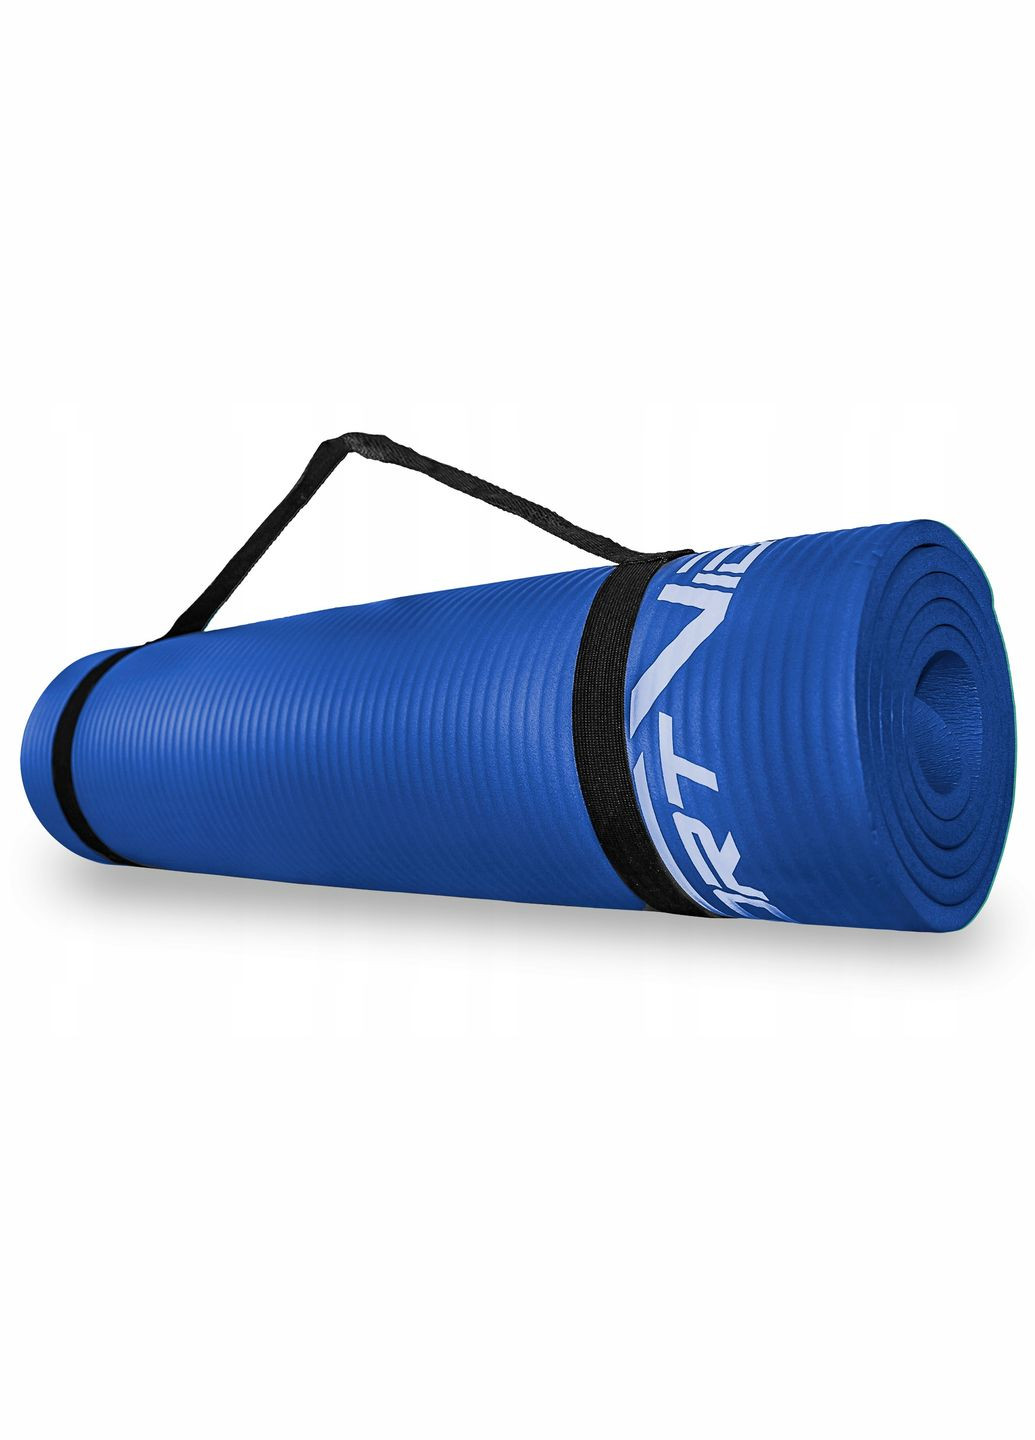 Килимок (мат) спортивний NBR 180 x 60 x 1.5 см для йоги та фітнесу SVHK0075 Blue SportVida sv-hk0075 (275095897)